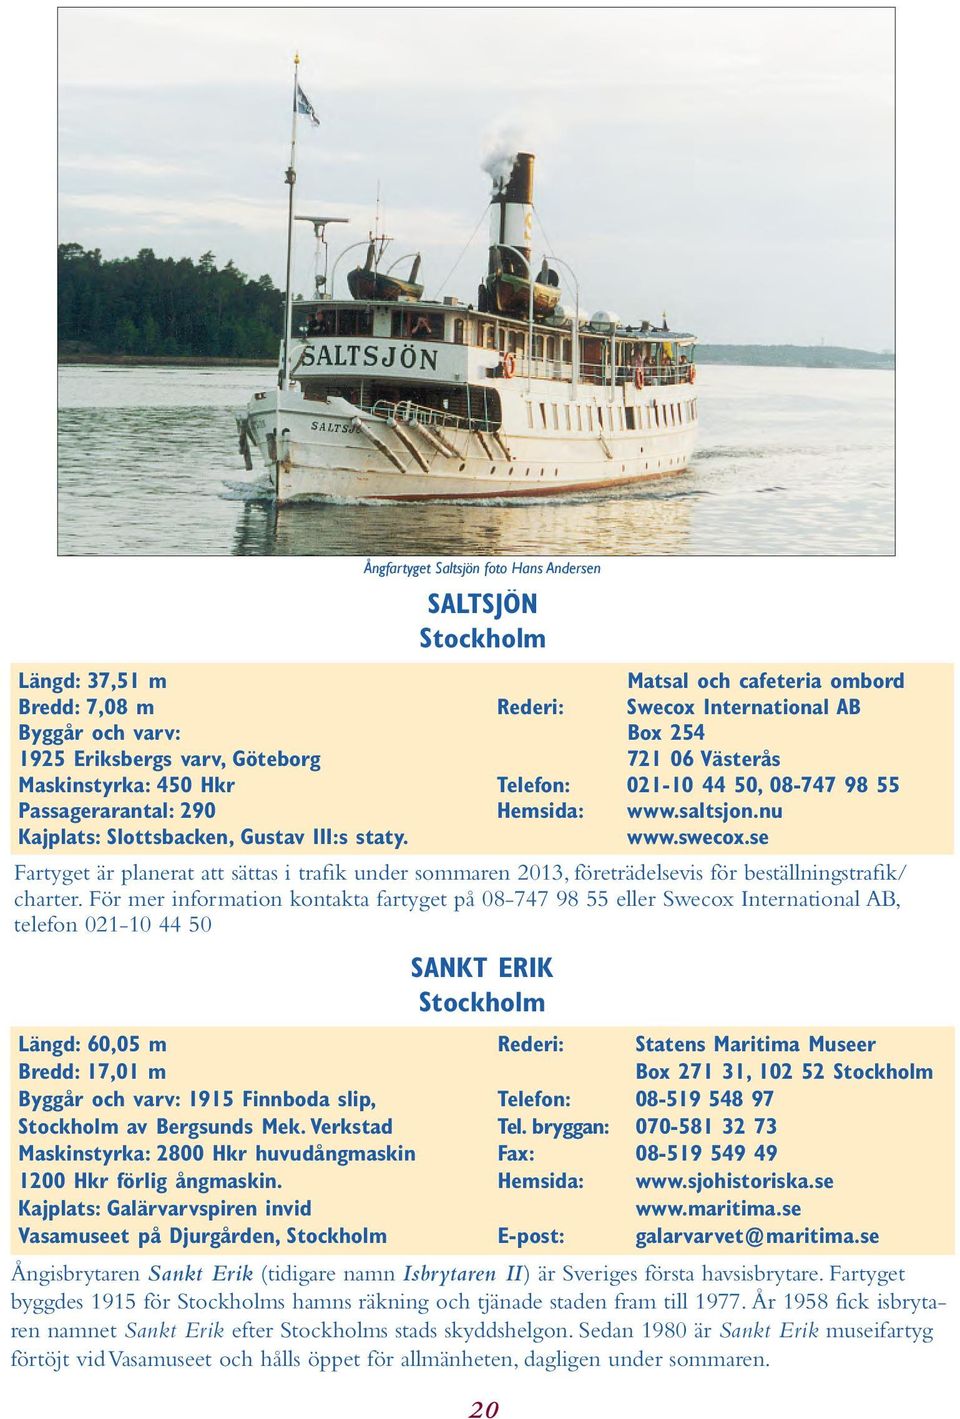 saltsjon.nu www.swecox.se Fartyget är planerat att sättas i trafik under sommaren 2013, företrädelsevis för beställningstrafik/ charter.